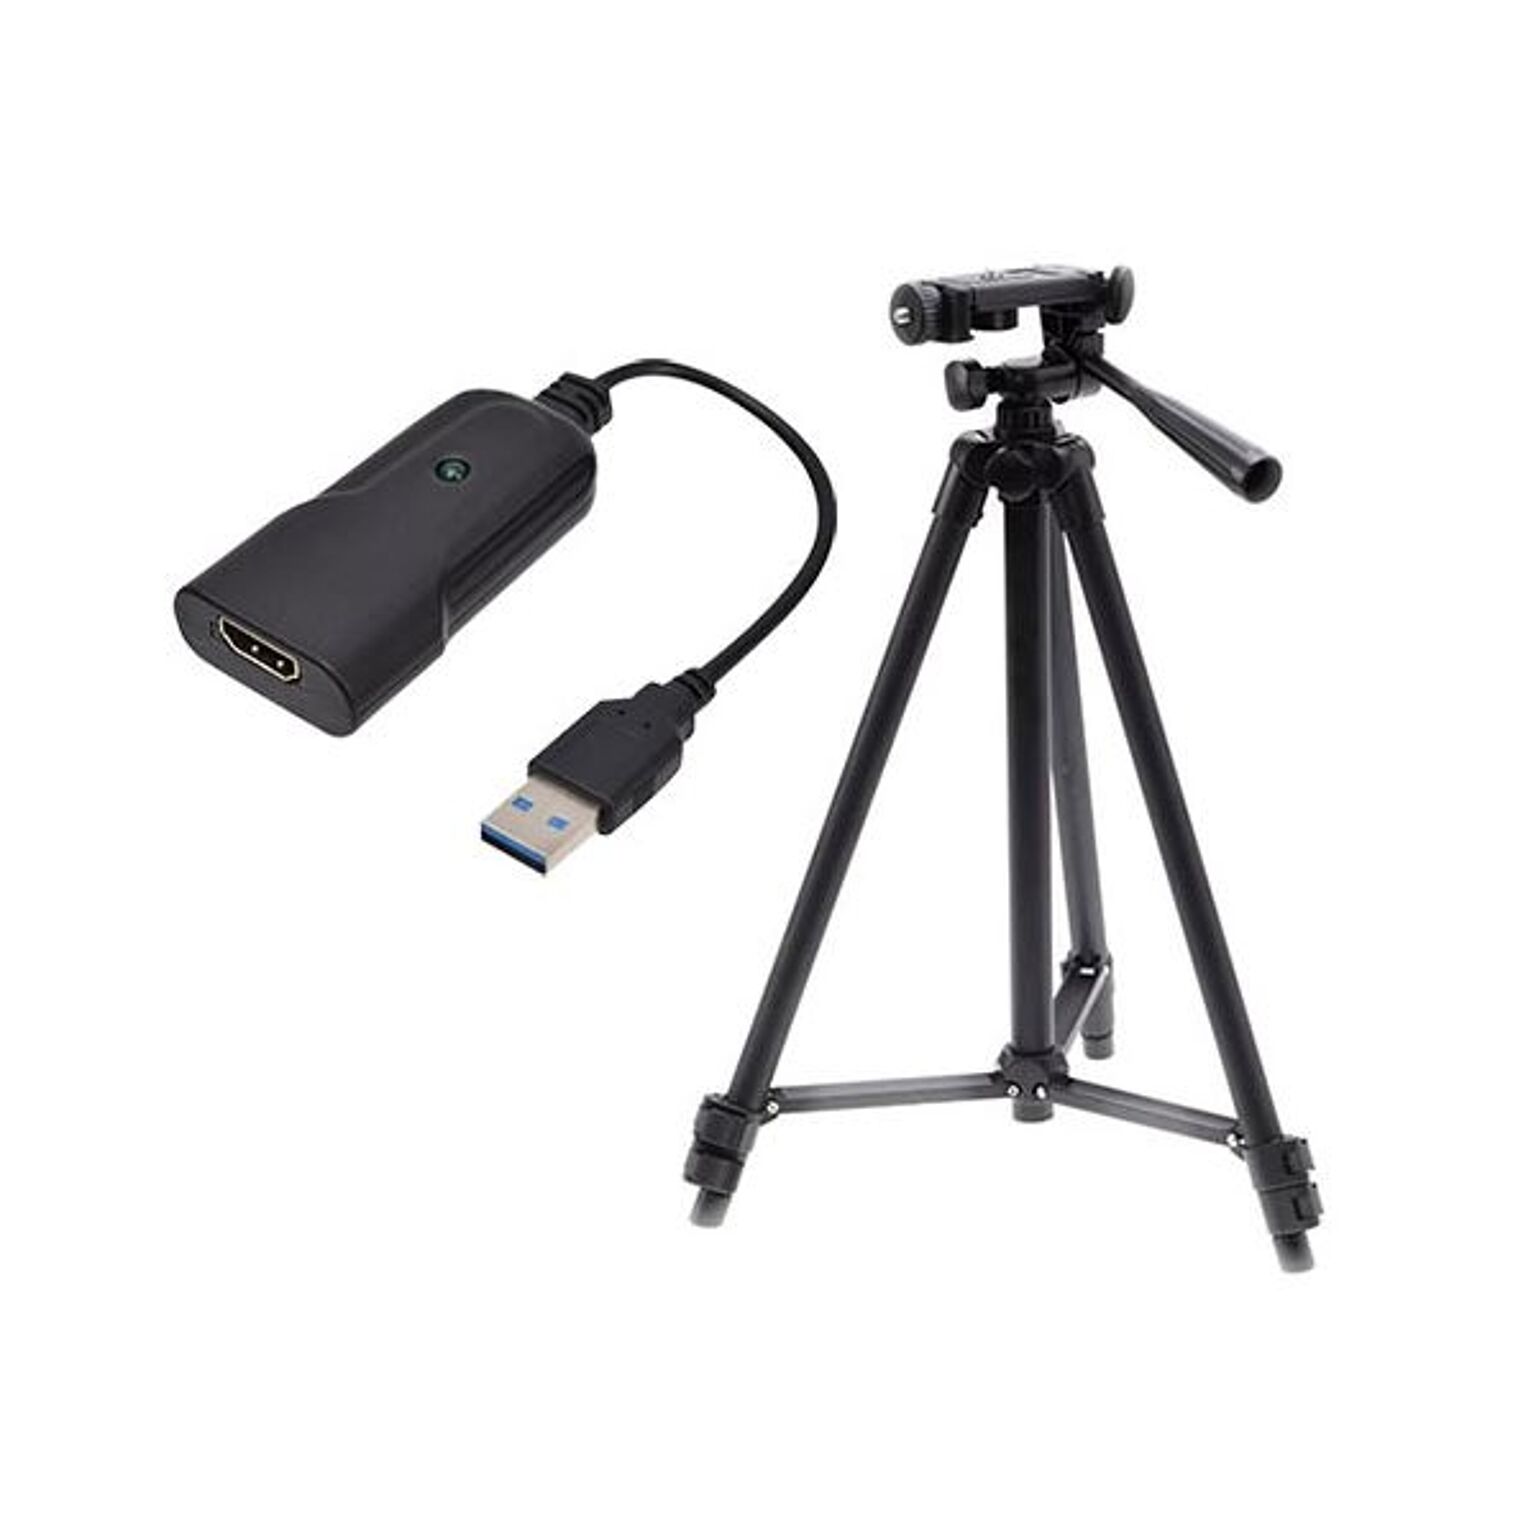 サンコー 一眼カメラやビデオカメラをWEBカメラに！「HDMI to USB WEBカメラアダプタ」 + エツミ フォレスト ツイン三脚 FT-1 SHDSLRVC+VE-2175